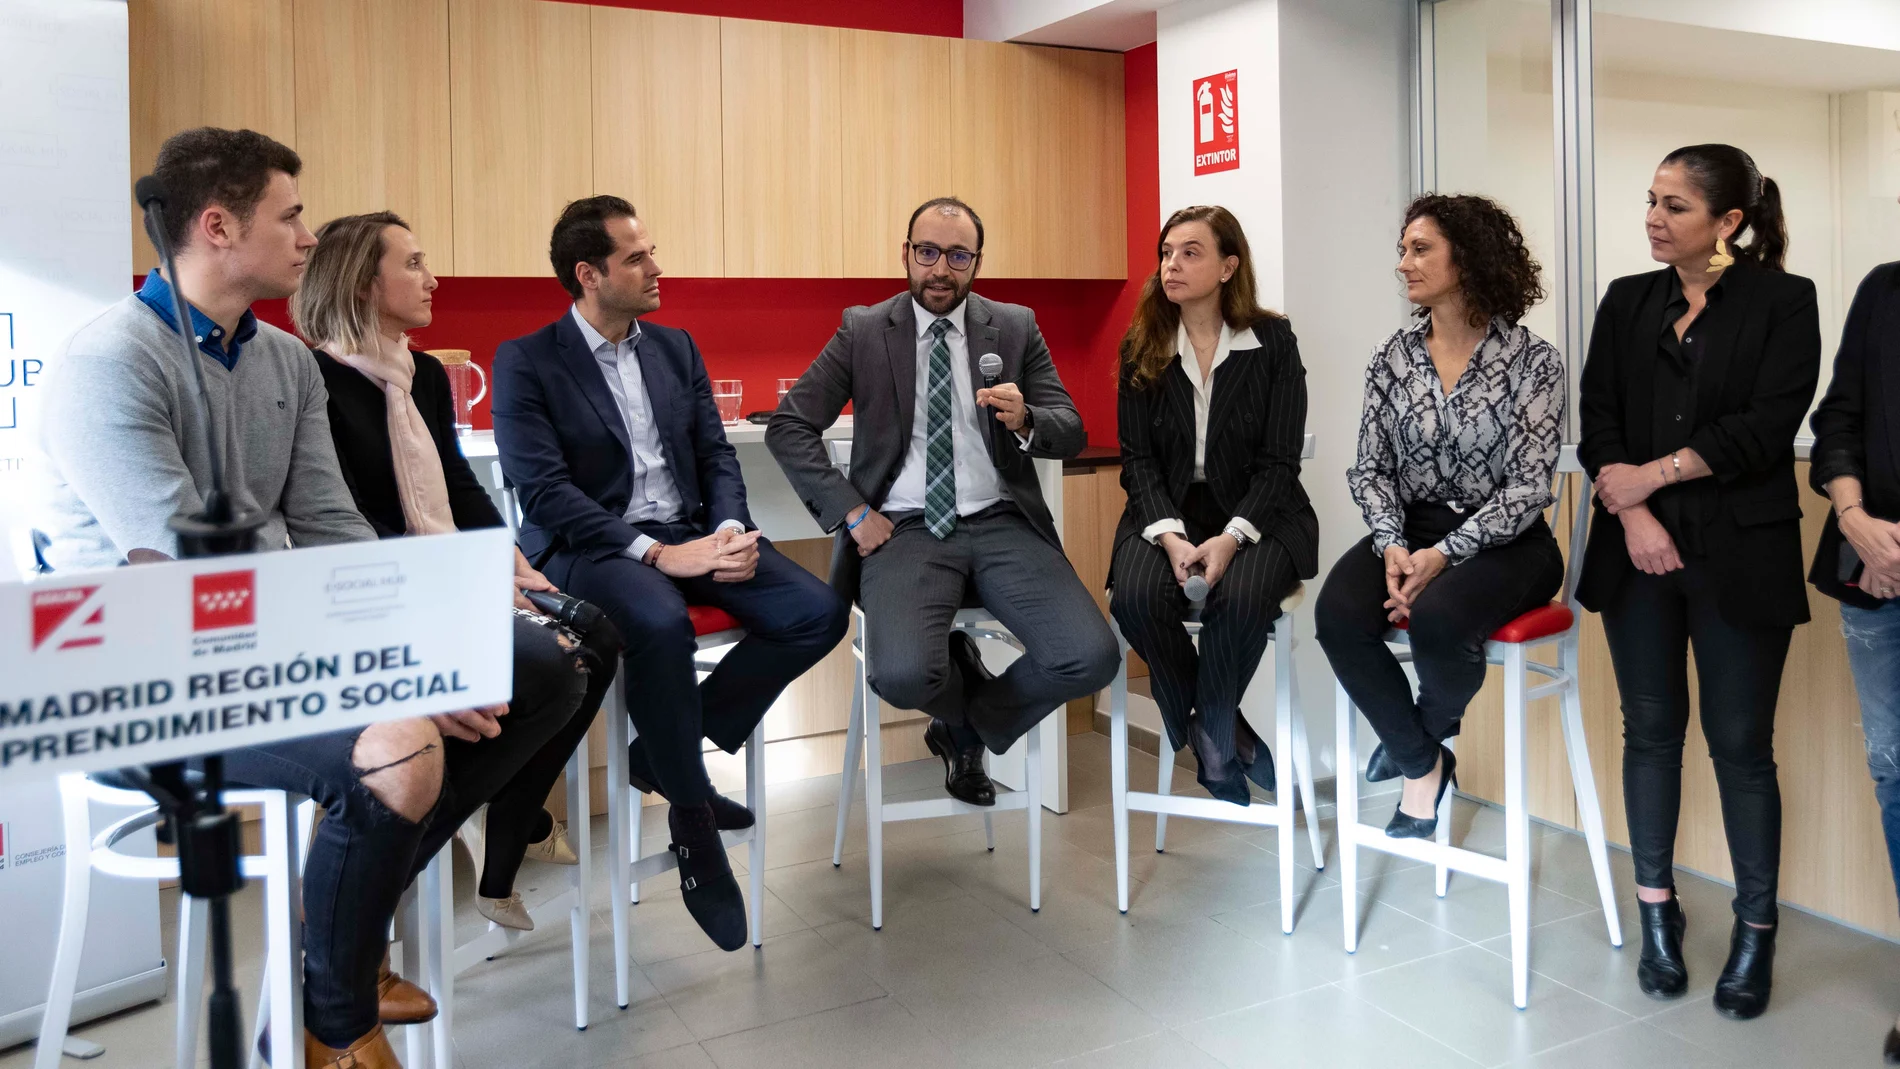 El vicepresidente de la Comunidad de Madrid inaugura este nuevo espacio dedicado al emprendimiento colectivo